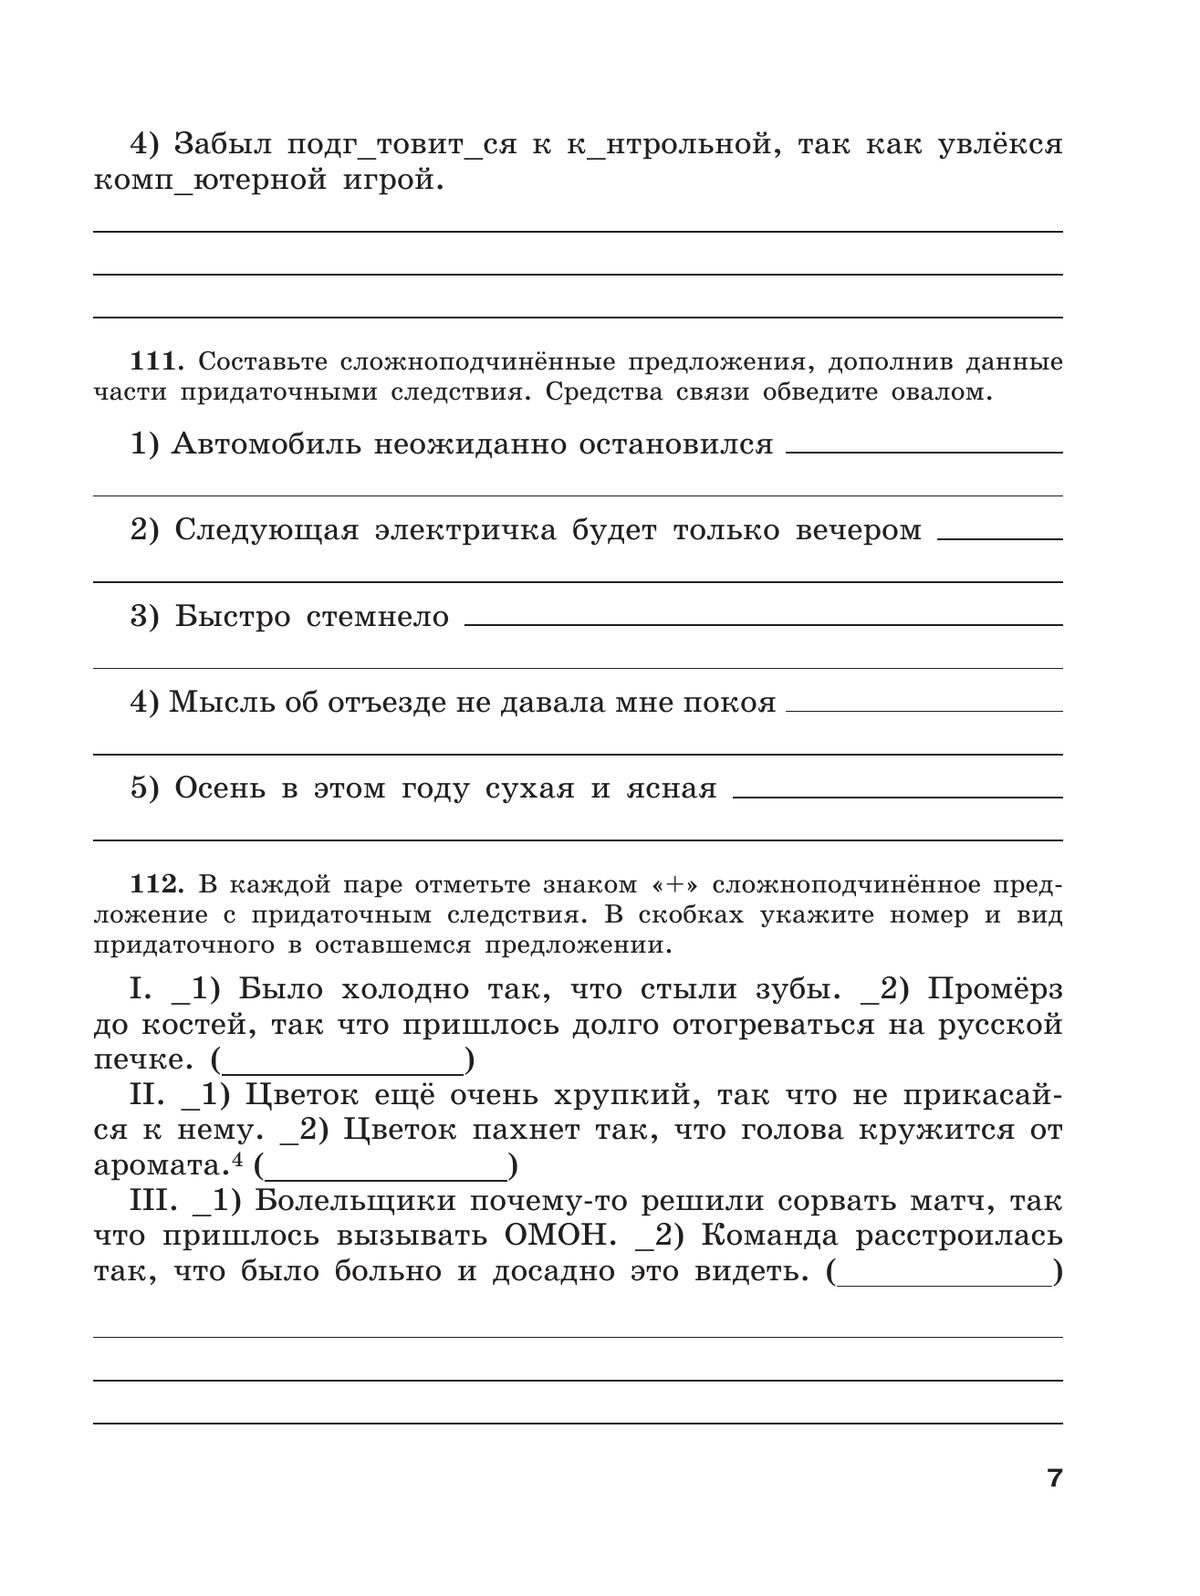 Скорая помощь по русскому языку. Рабочая тетрадь. 9 класс. В 2 ч. Часть 2 4